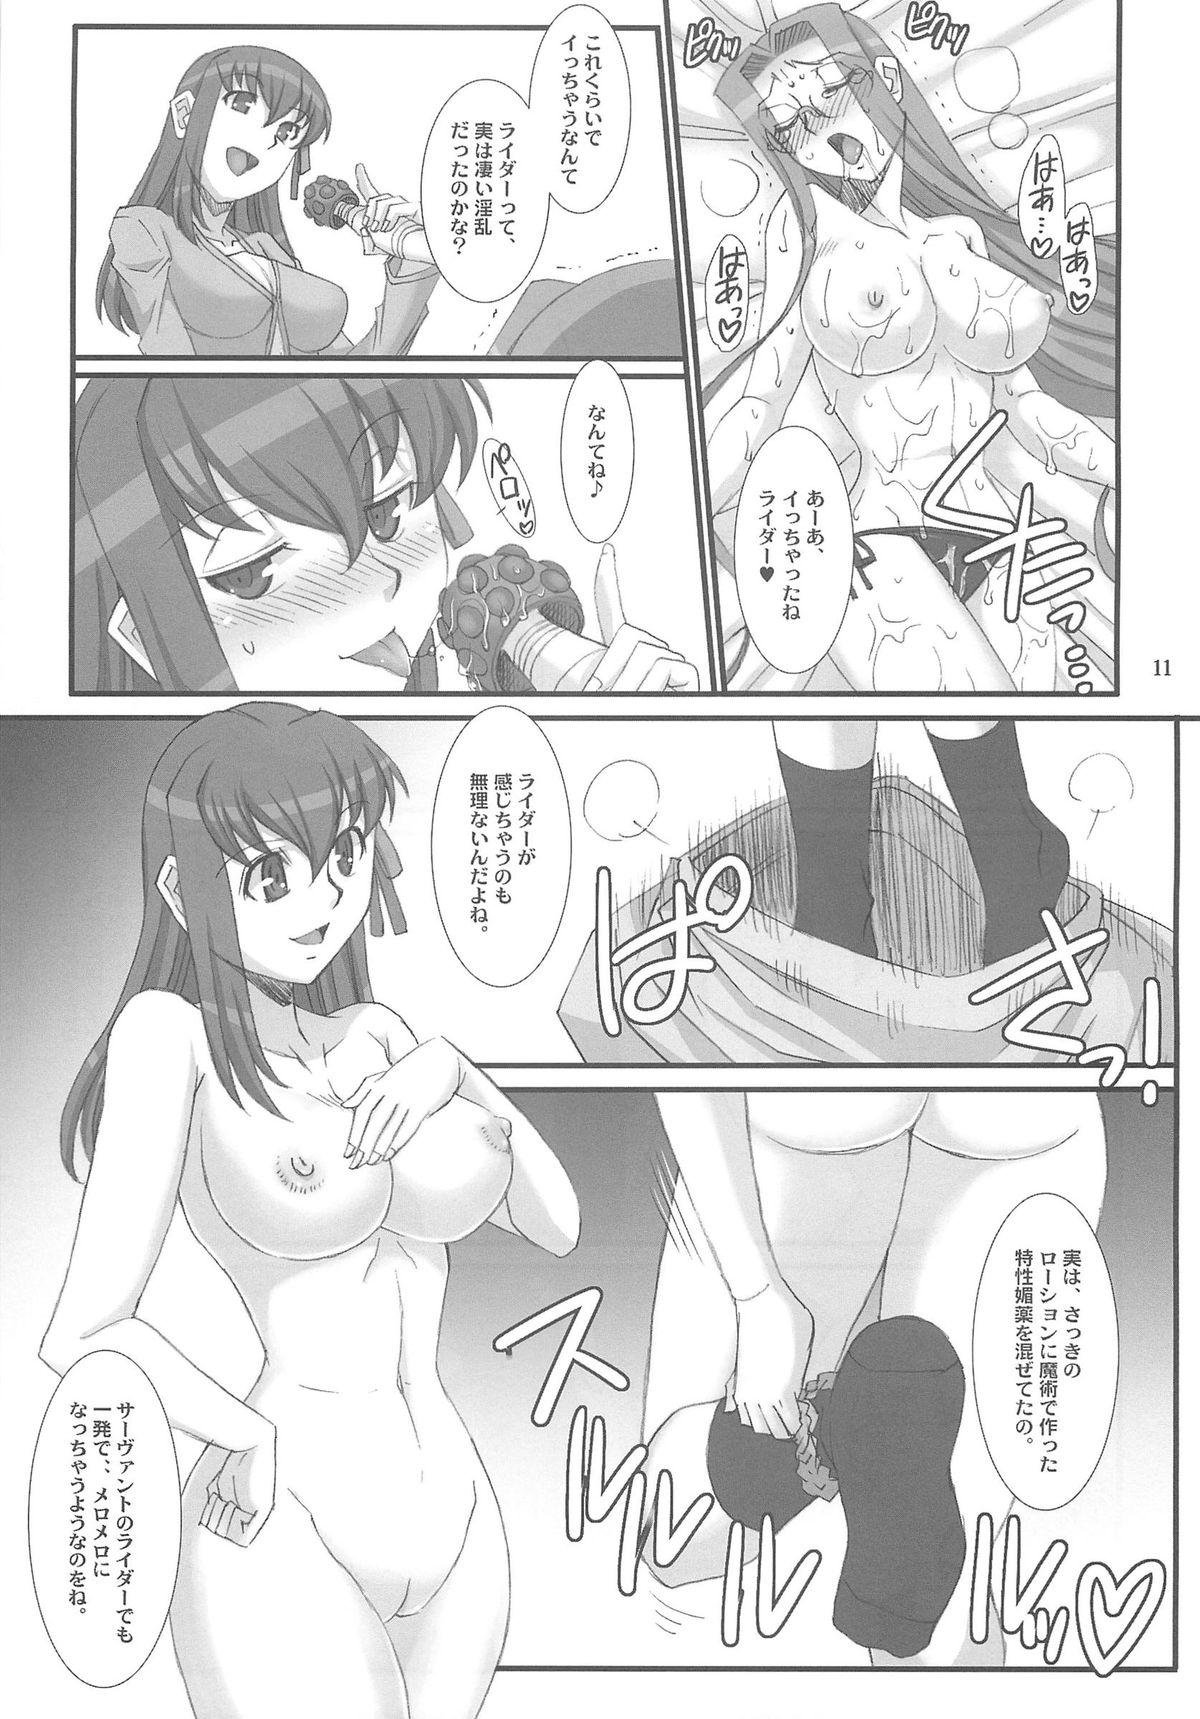 Hardfuck (COMIC1☆7) [H.B (B-RIVER)] Rider-san to Sakura-san. (Fate/stay night) - Fate stay night Olderwoman - Page 10